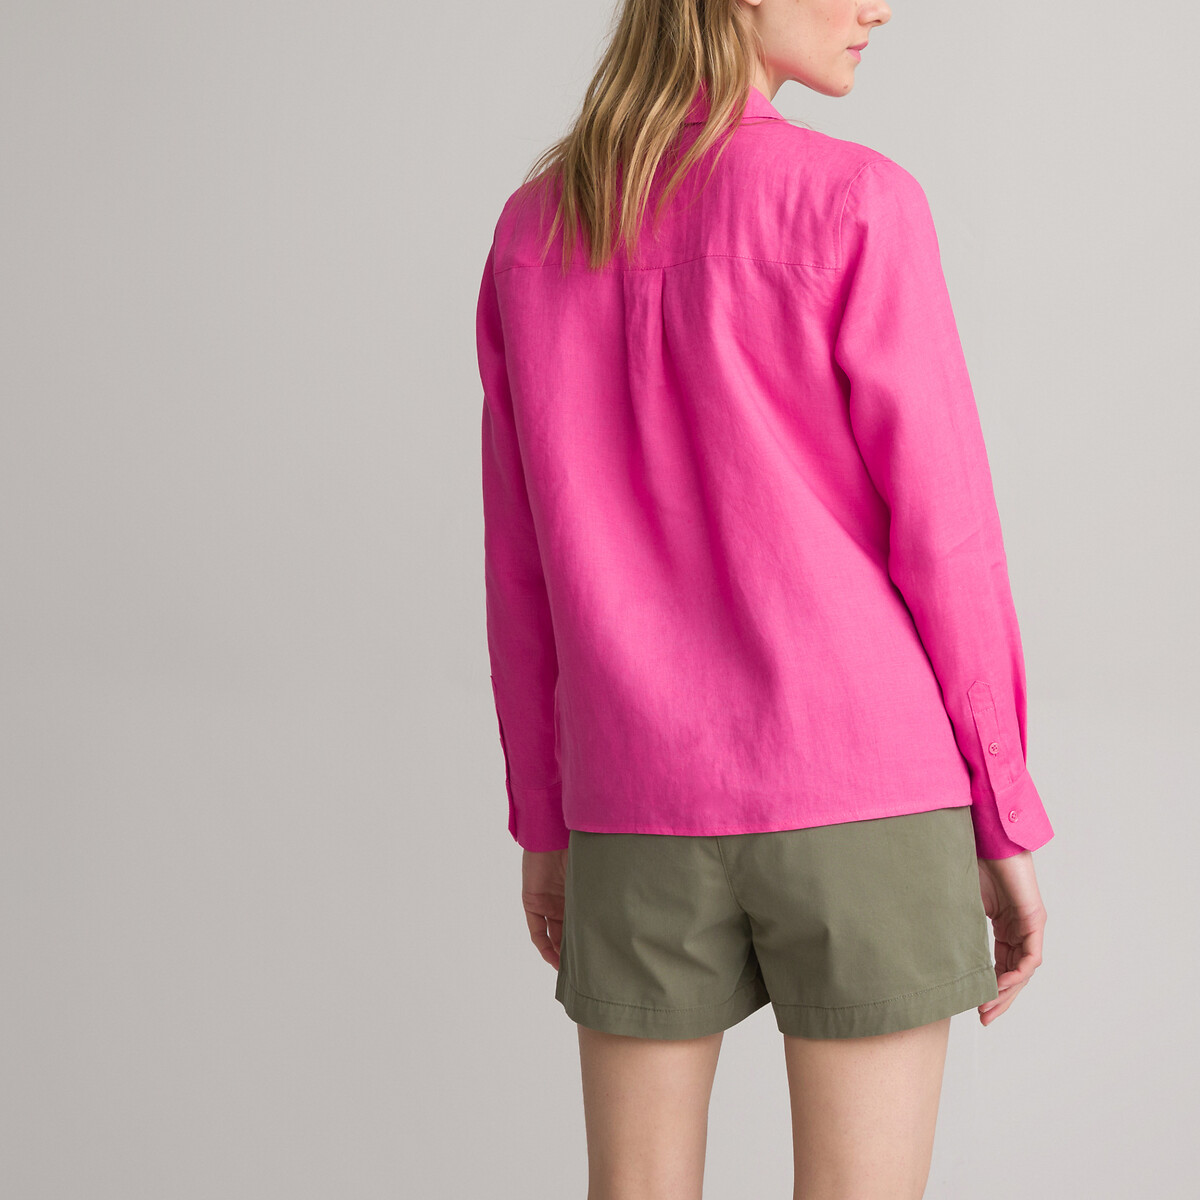 Рубашка Из льна с длинными рукавами 44 (FR) - 50 (RUS) розовый LaRedoute, размер 44 (FR) - 50 (RUS) Рубашка Из льна с длинными рукавами 44 (FR) - 50 (RUS) розовый - фото 4